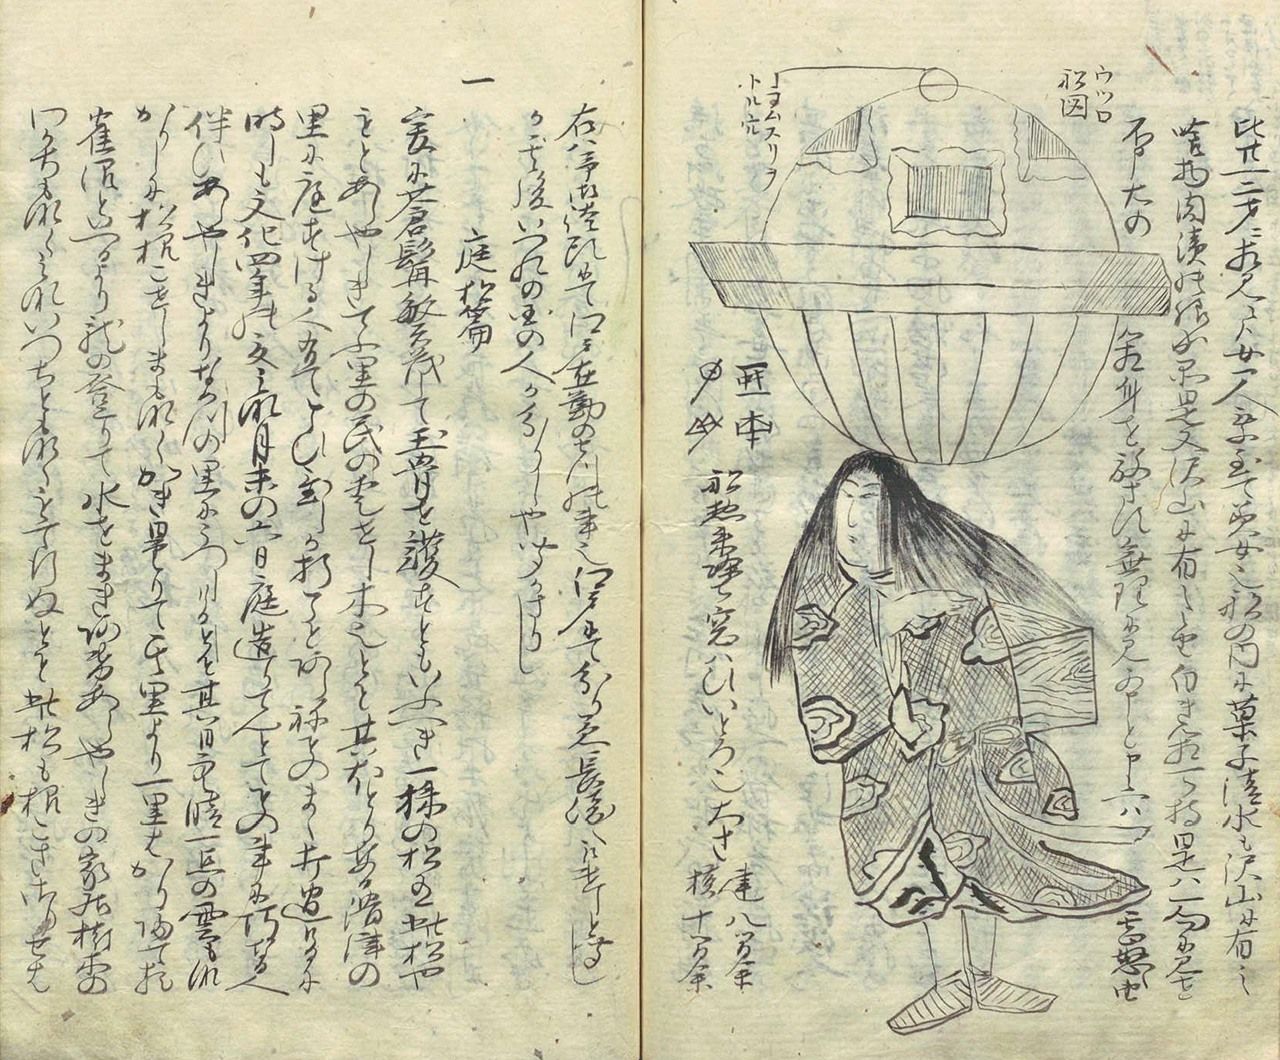 Από το Ōshuku zakki (Ōshuku Notes; περίπου το 1815) από τον Komai Norimura, υποτελή του ισχυρού daimyō Matsudaira Sadanobu. (Ευγενική προσφορά Εθνική Βιβλιοθήκη Διατροφής)